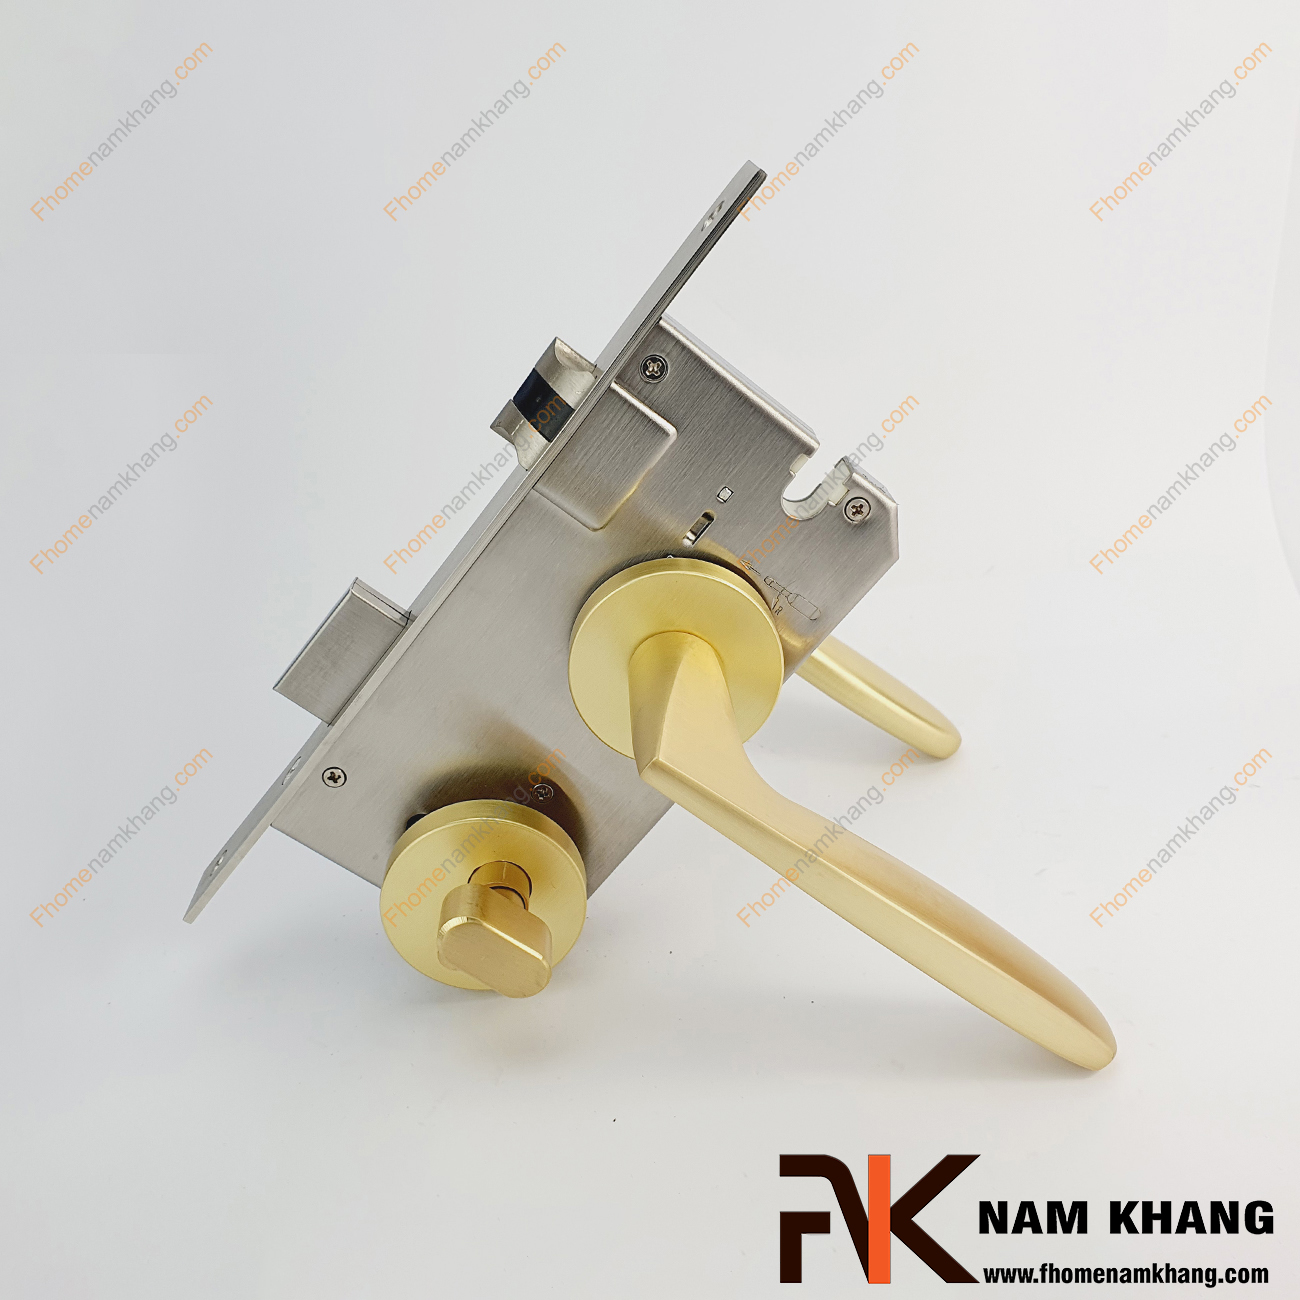 Khóa cửa phân thể cao cấp dạng trơn màu vàng xước NK576-VX được sản xuất từ hợp kim cao cấp. Dòng khóa này có thiết kế phần ốp khóa và tay gạt riêng biệt, khá nhỏ gọn và tạo được sự độc đáo.